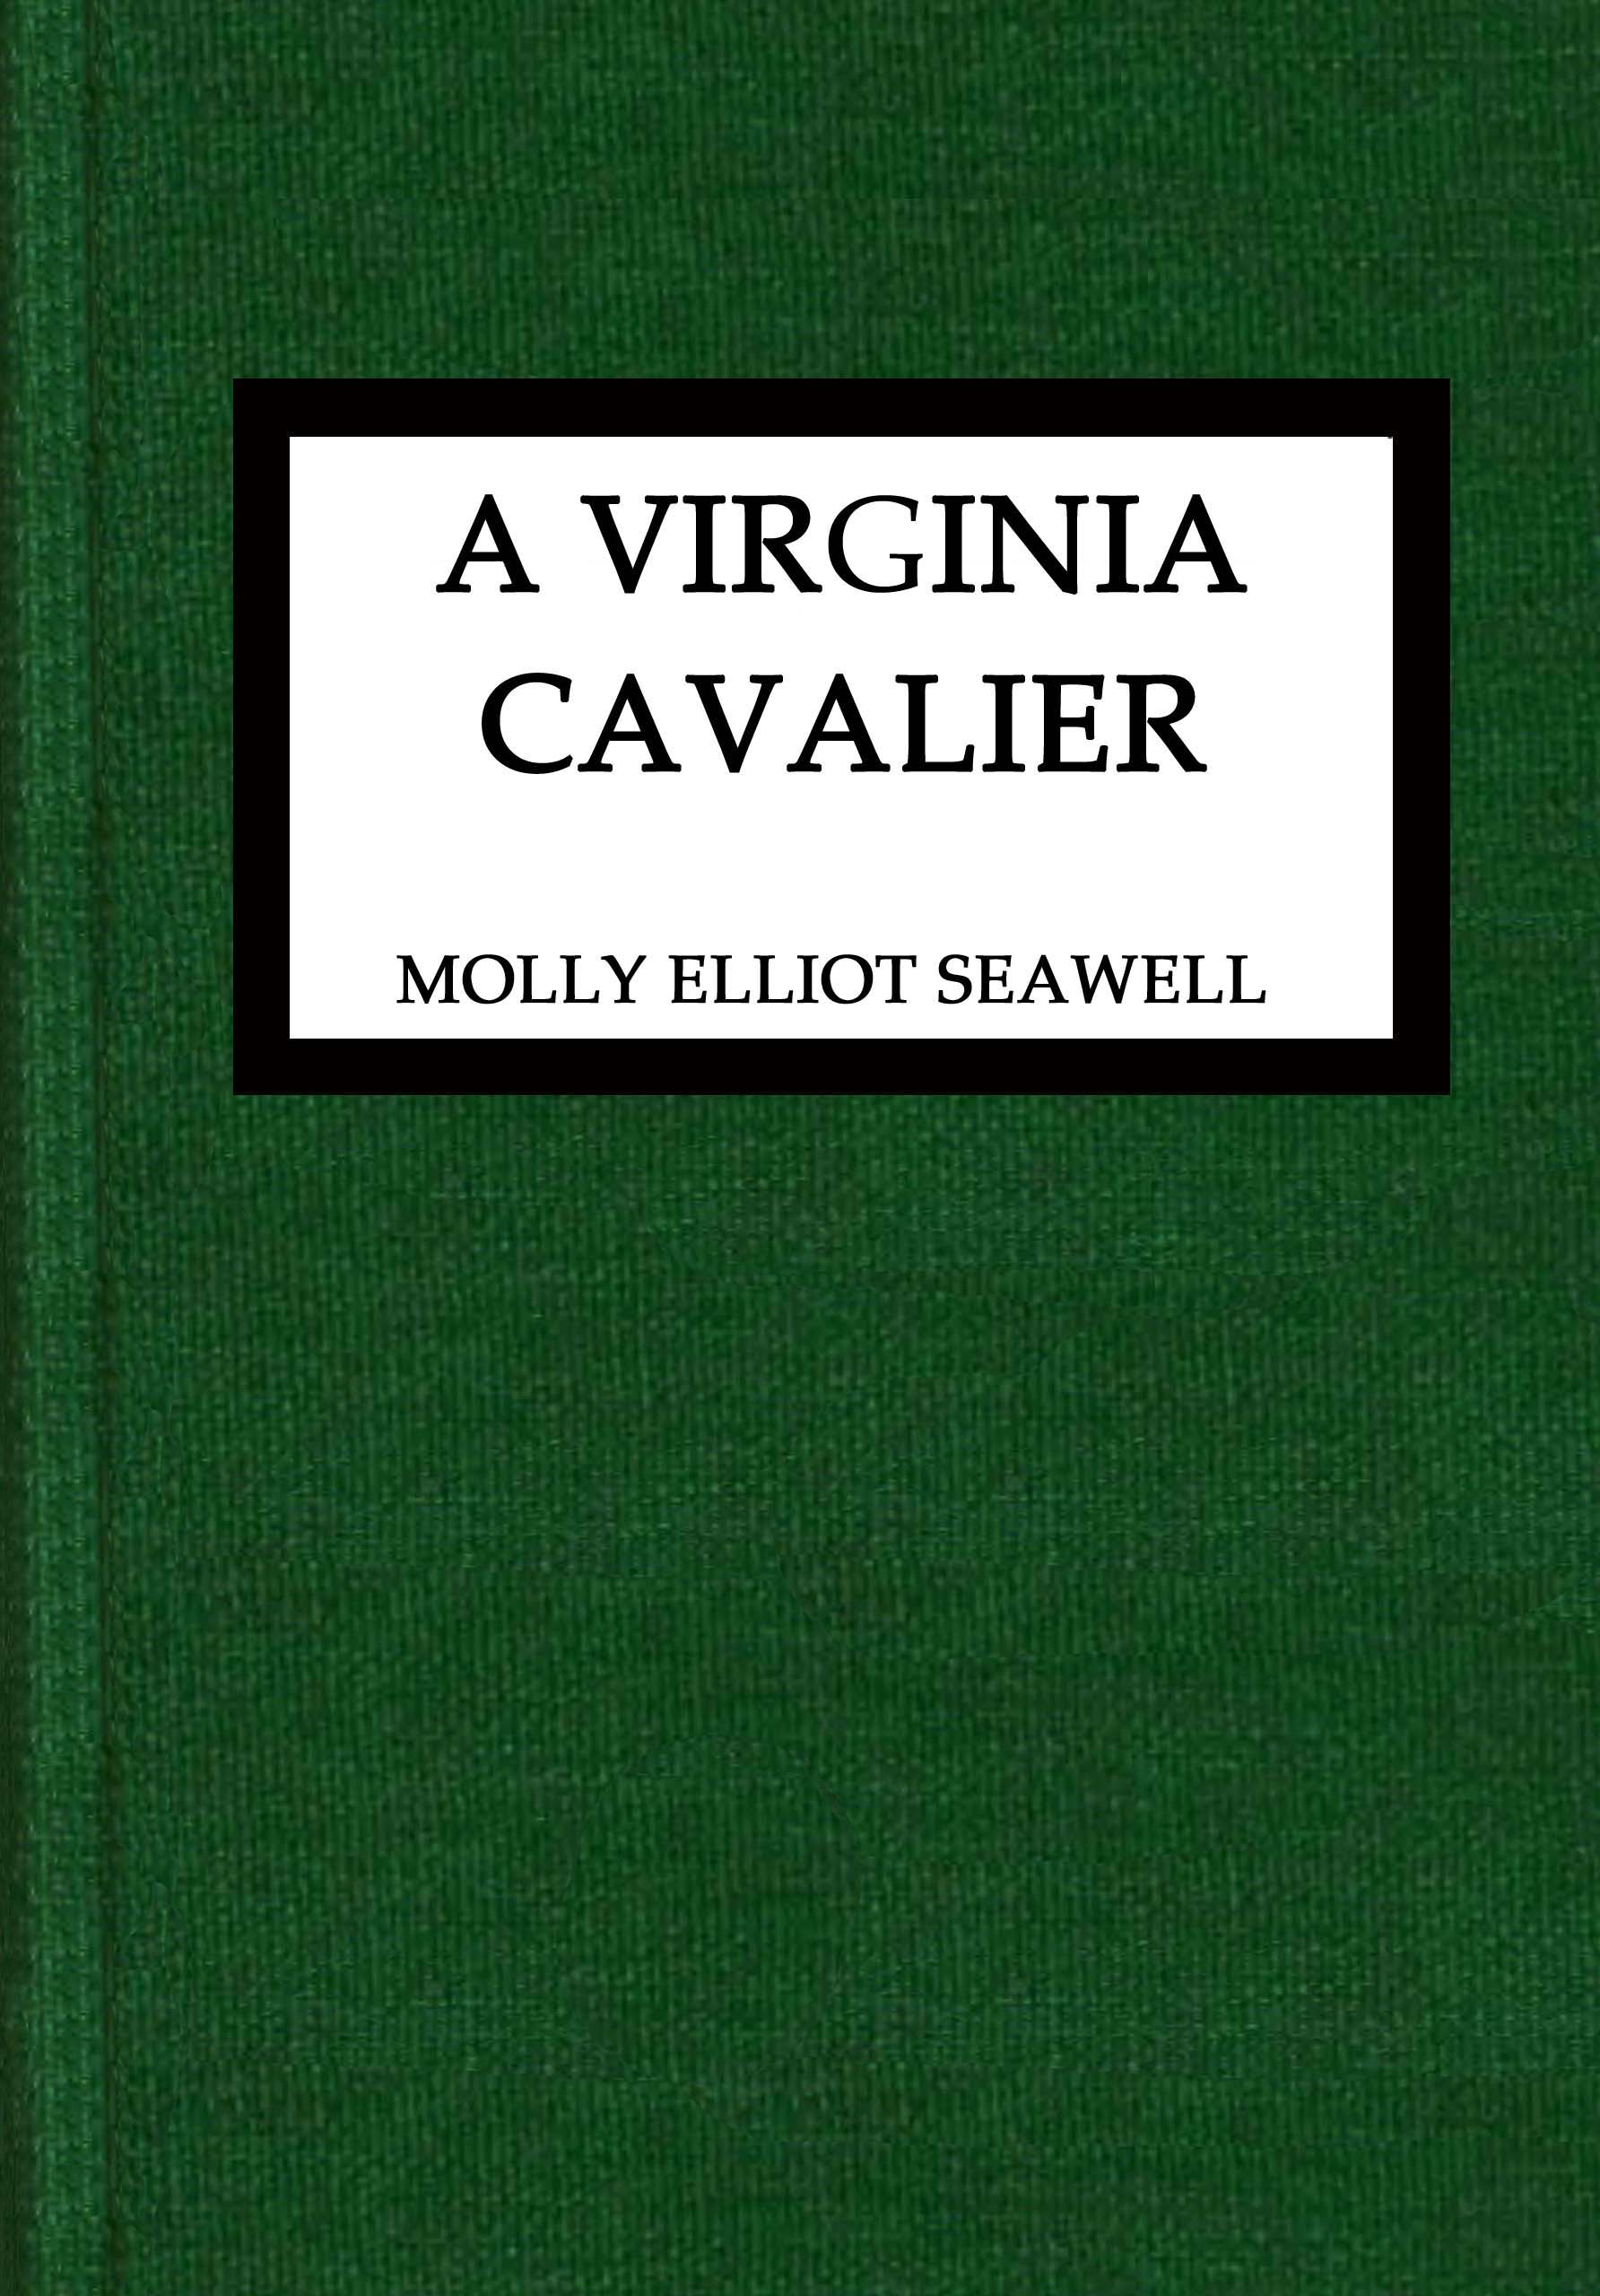 A Virginia cavalier